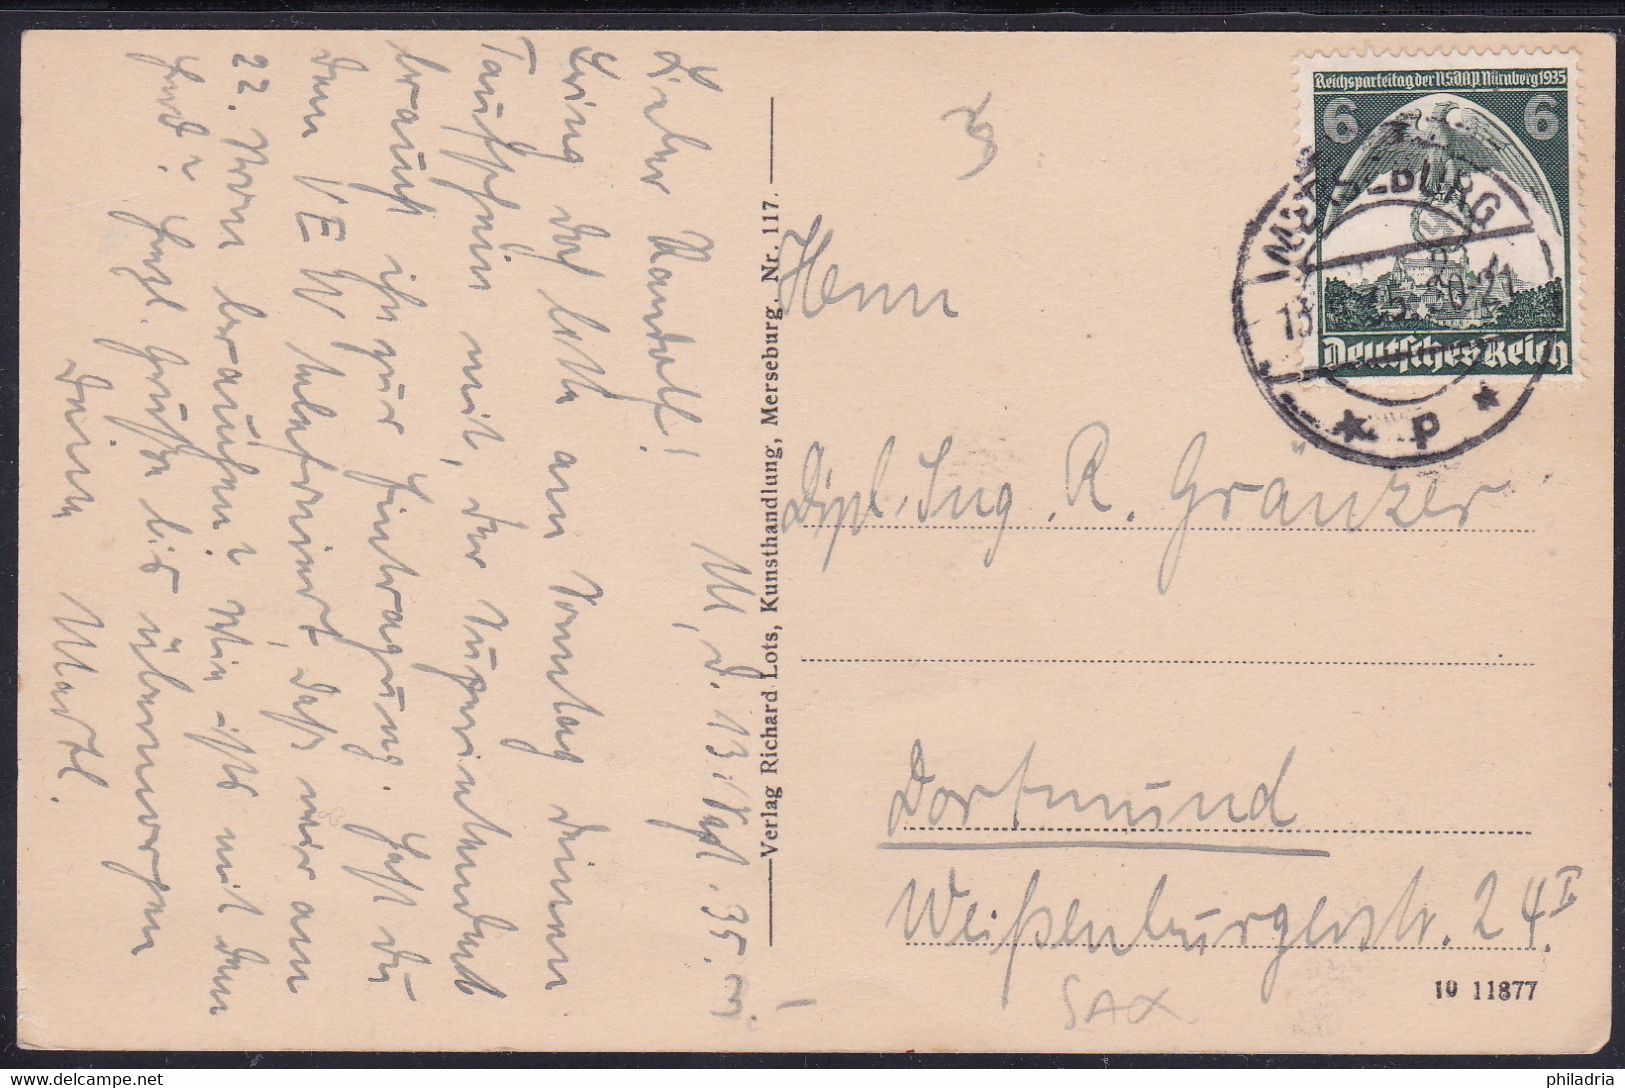 Merseburg, Rathaus, Mailed 1935 - Merseburg